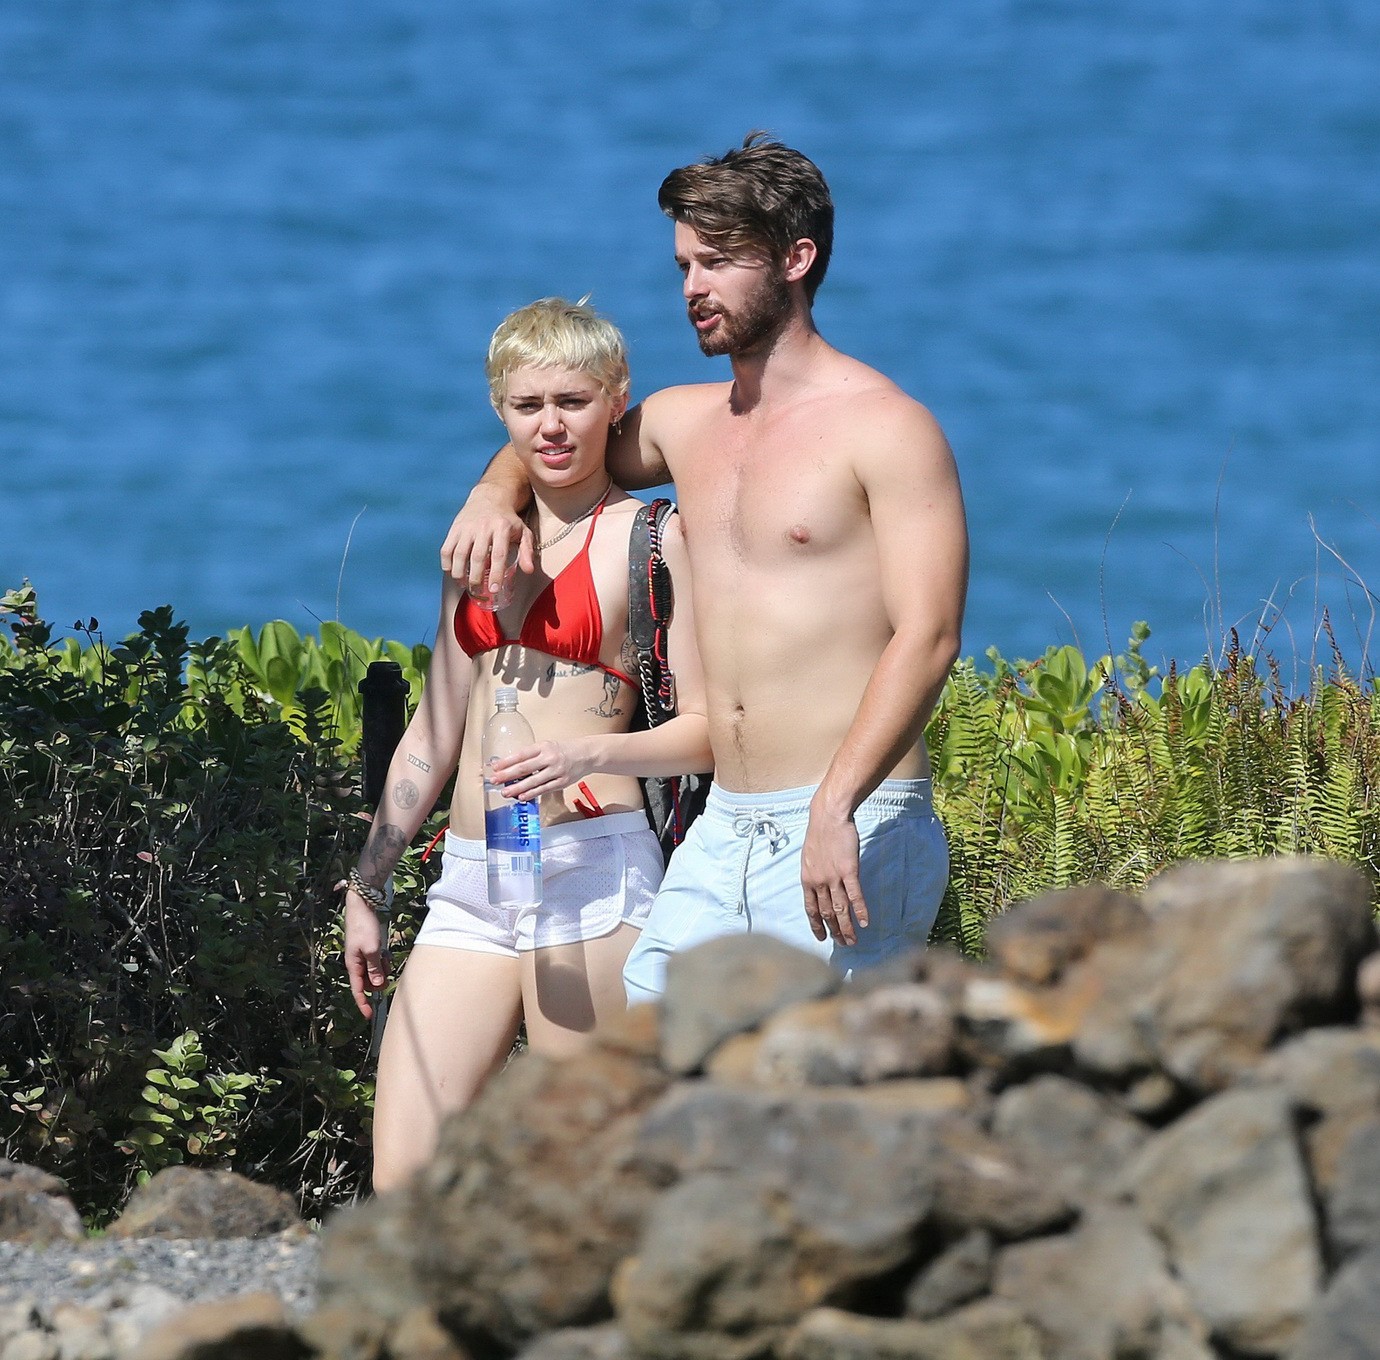 Miley cyrus con un diminuto bikini rojo y unos shorts transparentes en sus vacaciones en hawai
 #75175068